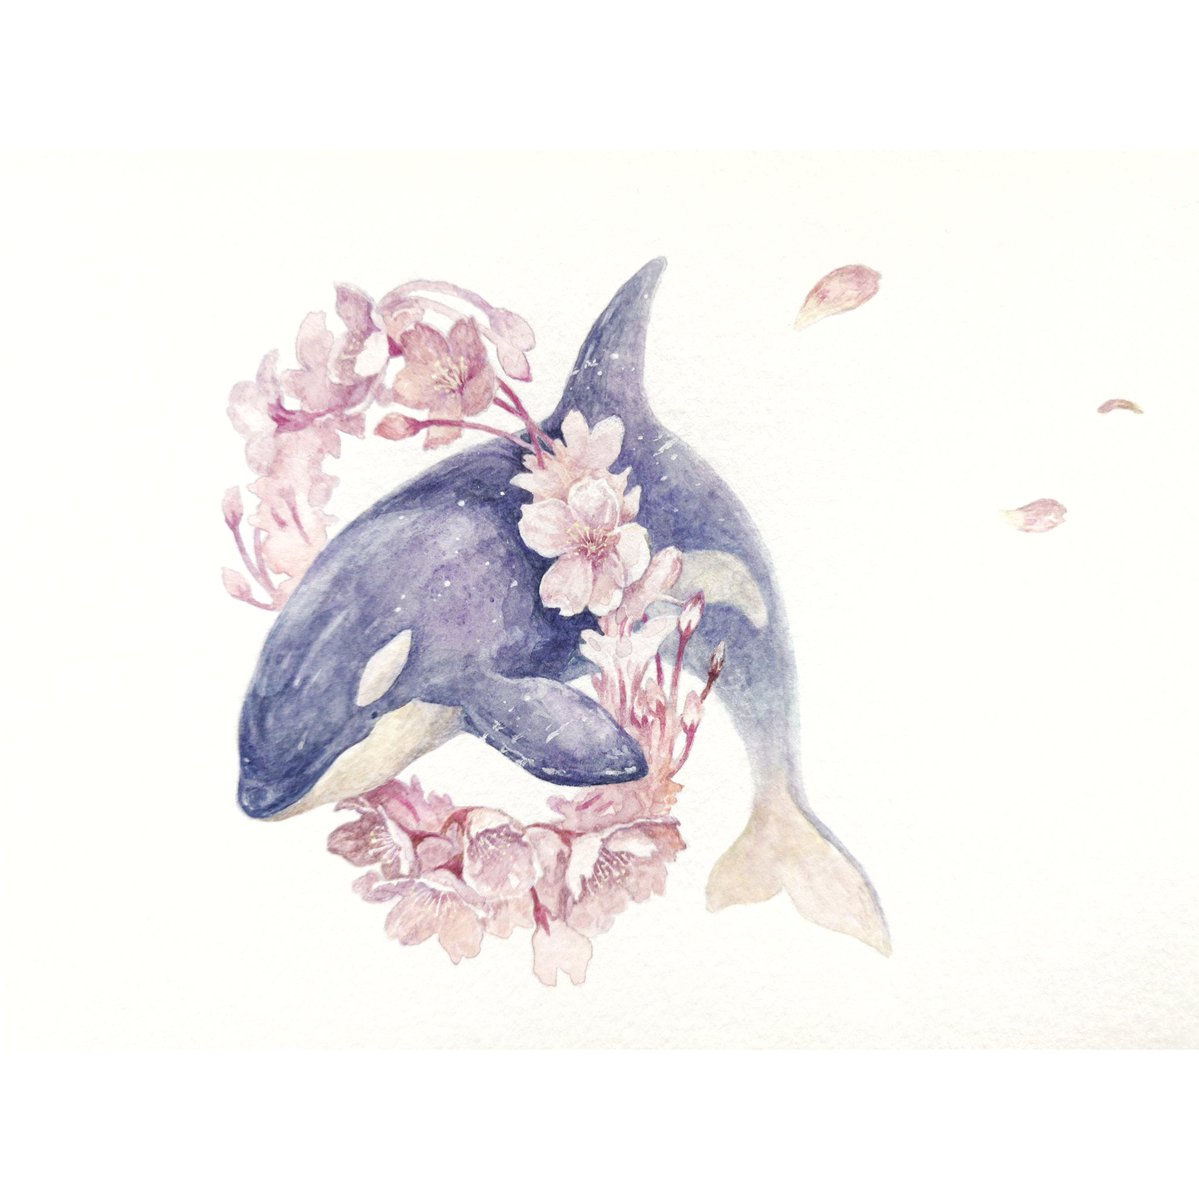 Hirotoshi Kanou 在 Twitter 上 桜にシャチ 透明水彩 シャチ シャチ好き イラストすきな人と繋がりたい 絵描きさんと繫がりたい 桜すきな人と繋がりたい お花見 T Co Igz9qxm3fn Twitter